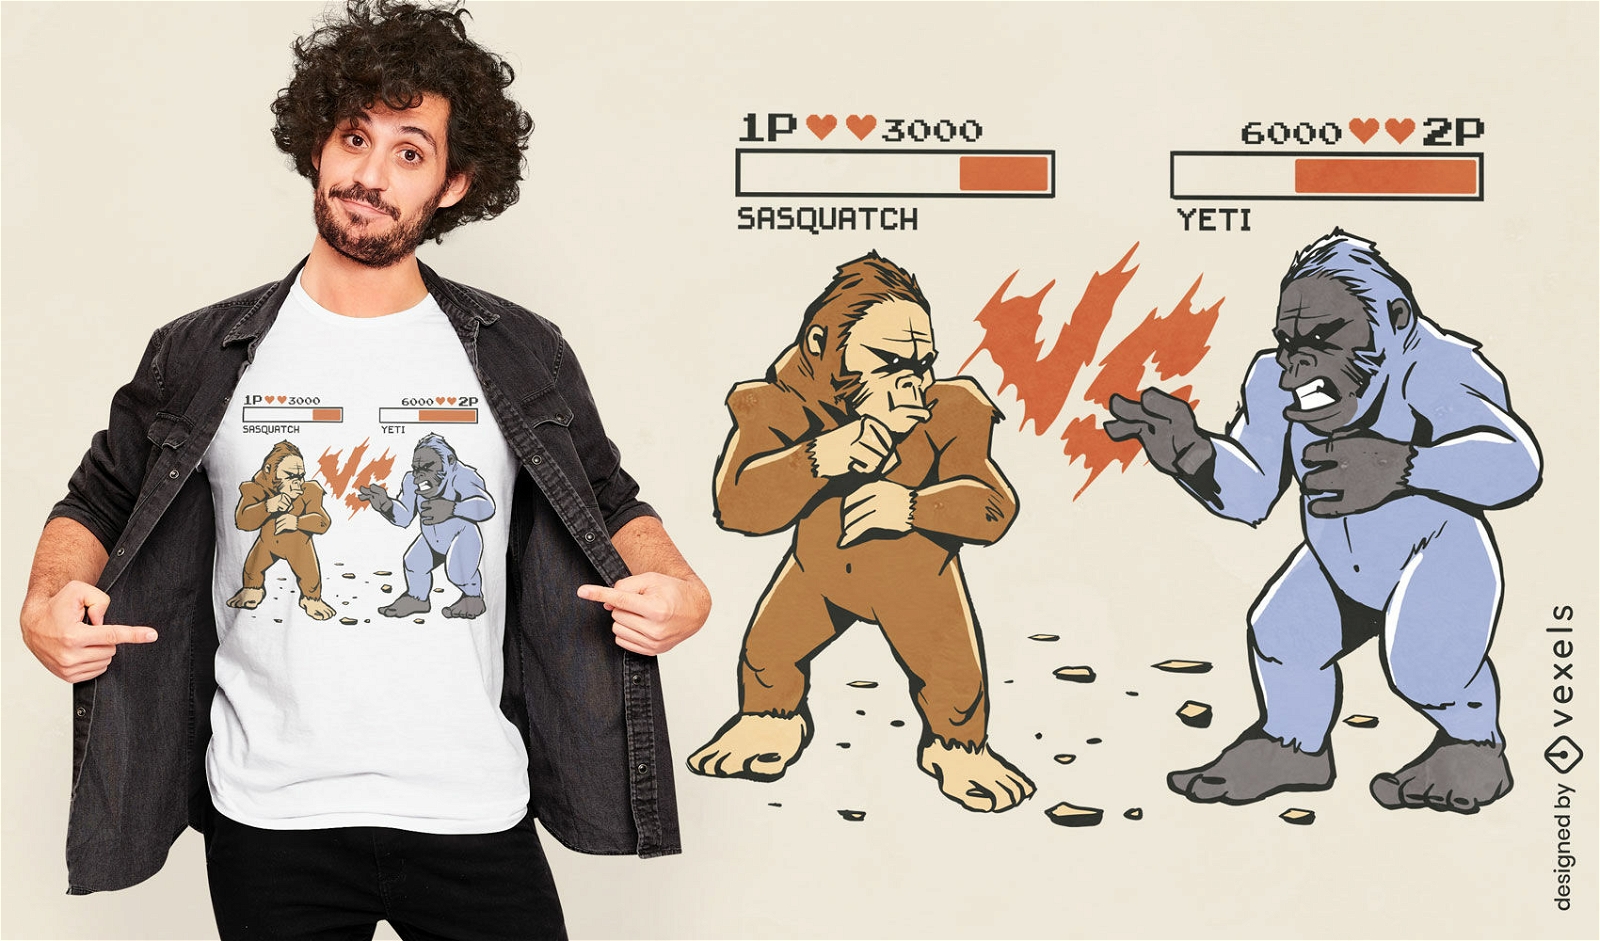 Dise?o de camiseta de videojuego Bigfoot vs yeti